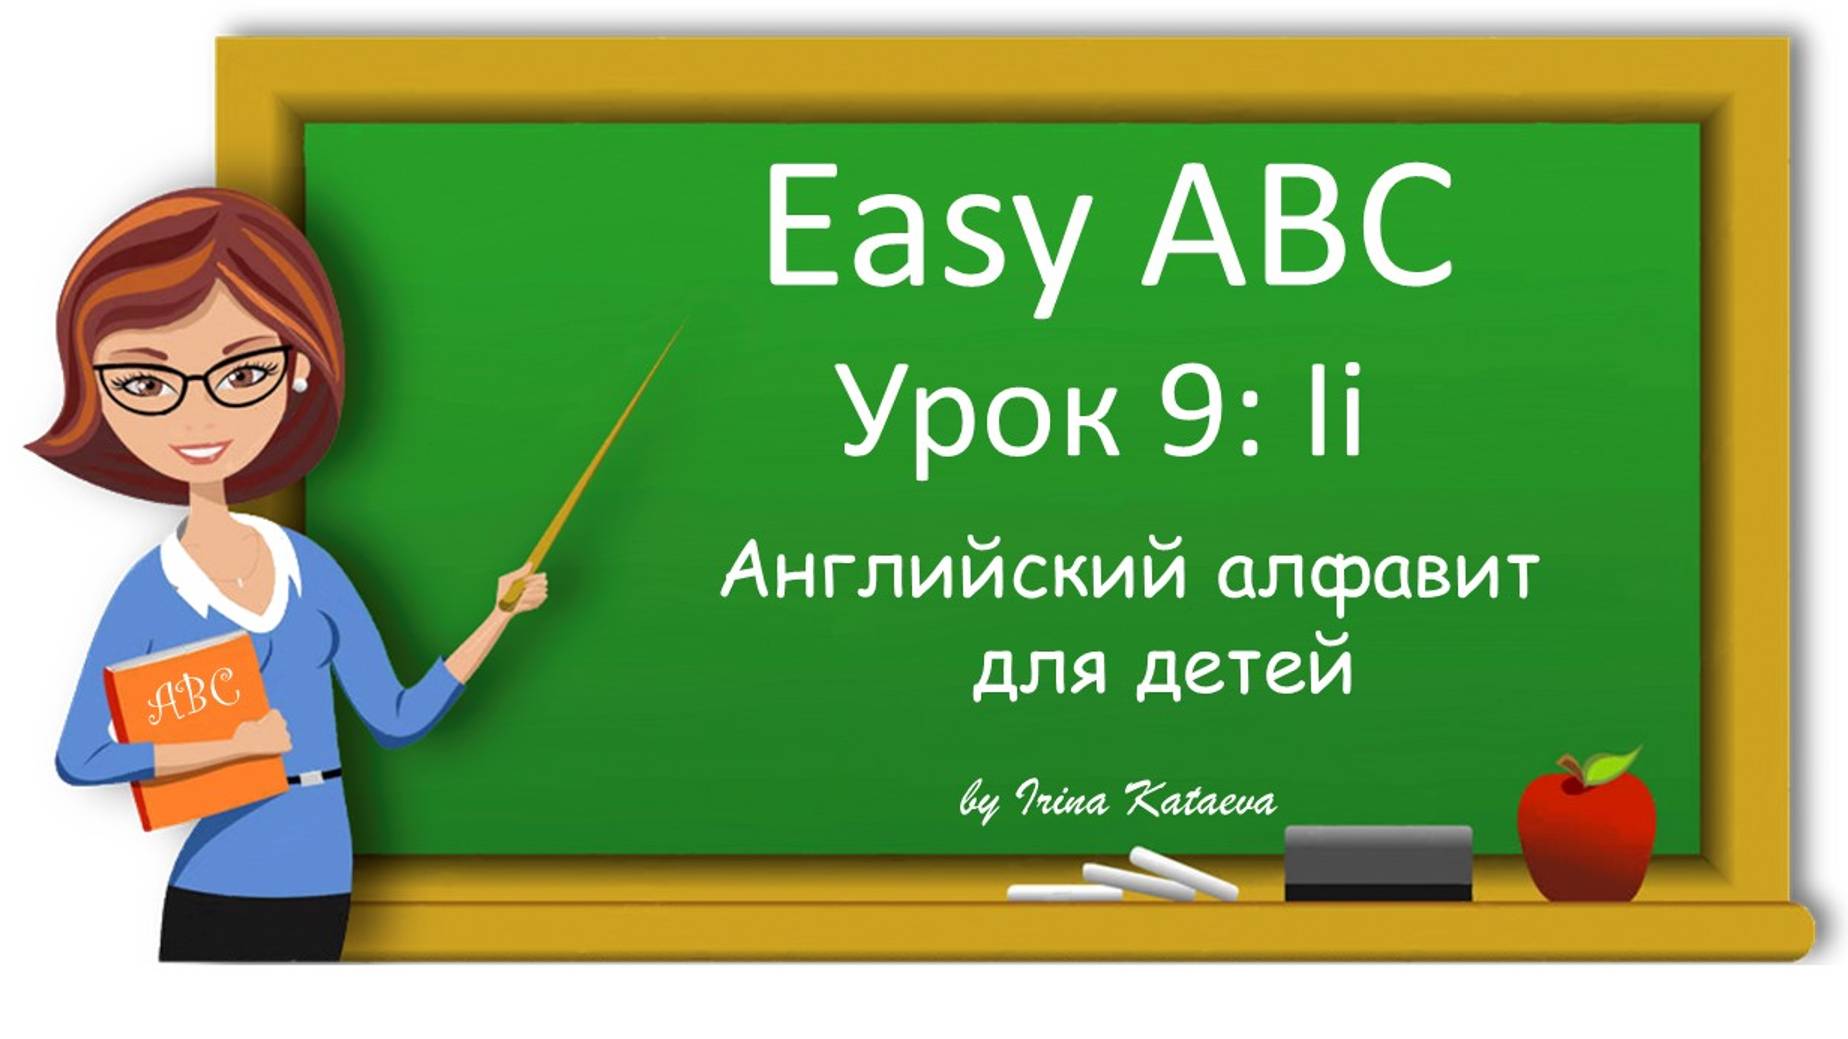 Урок 9. Ii (Easy ABC)